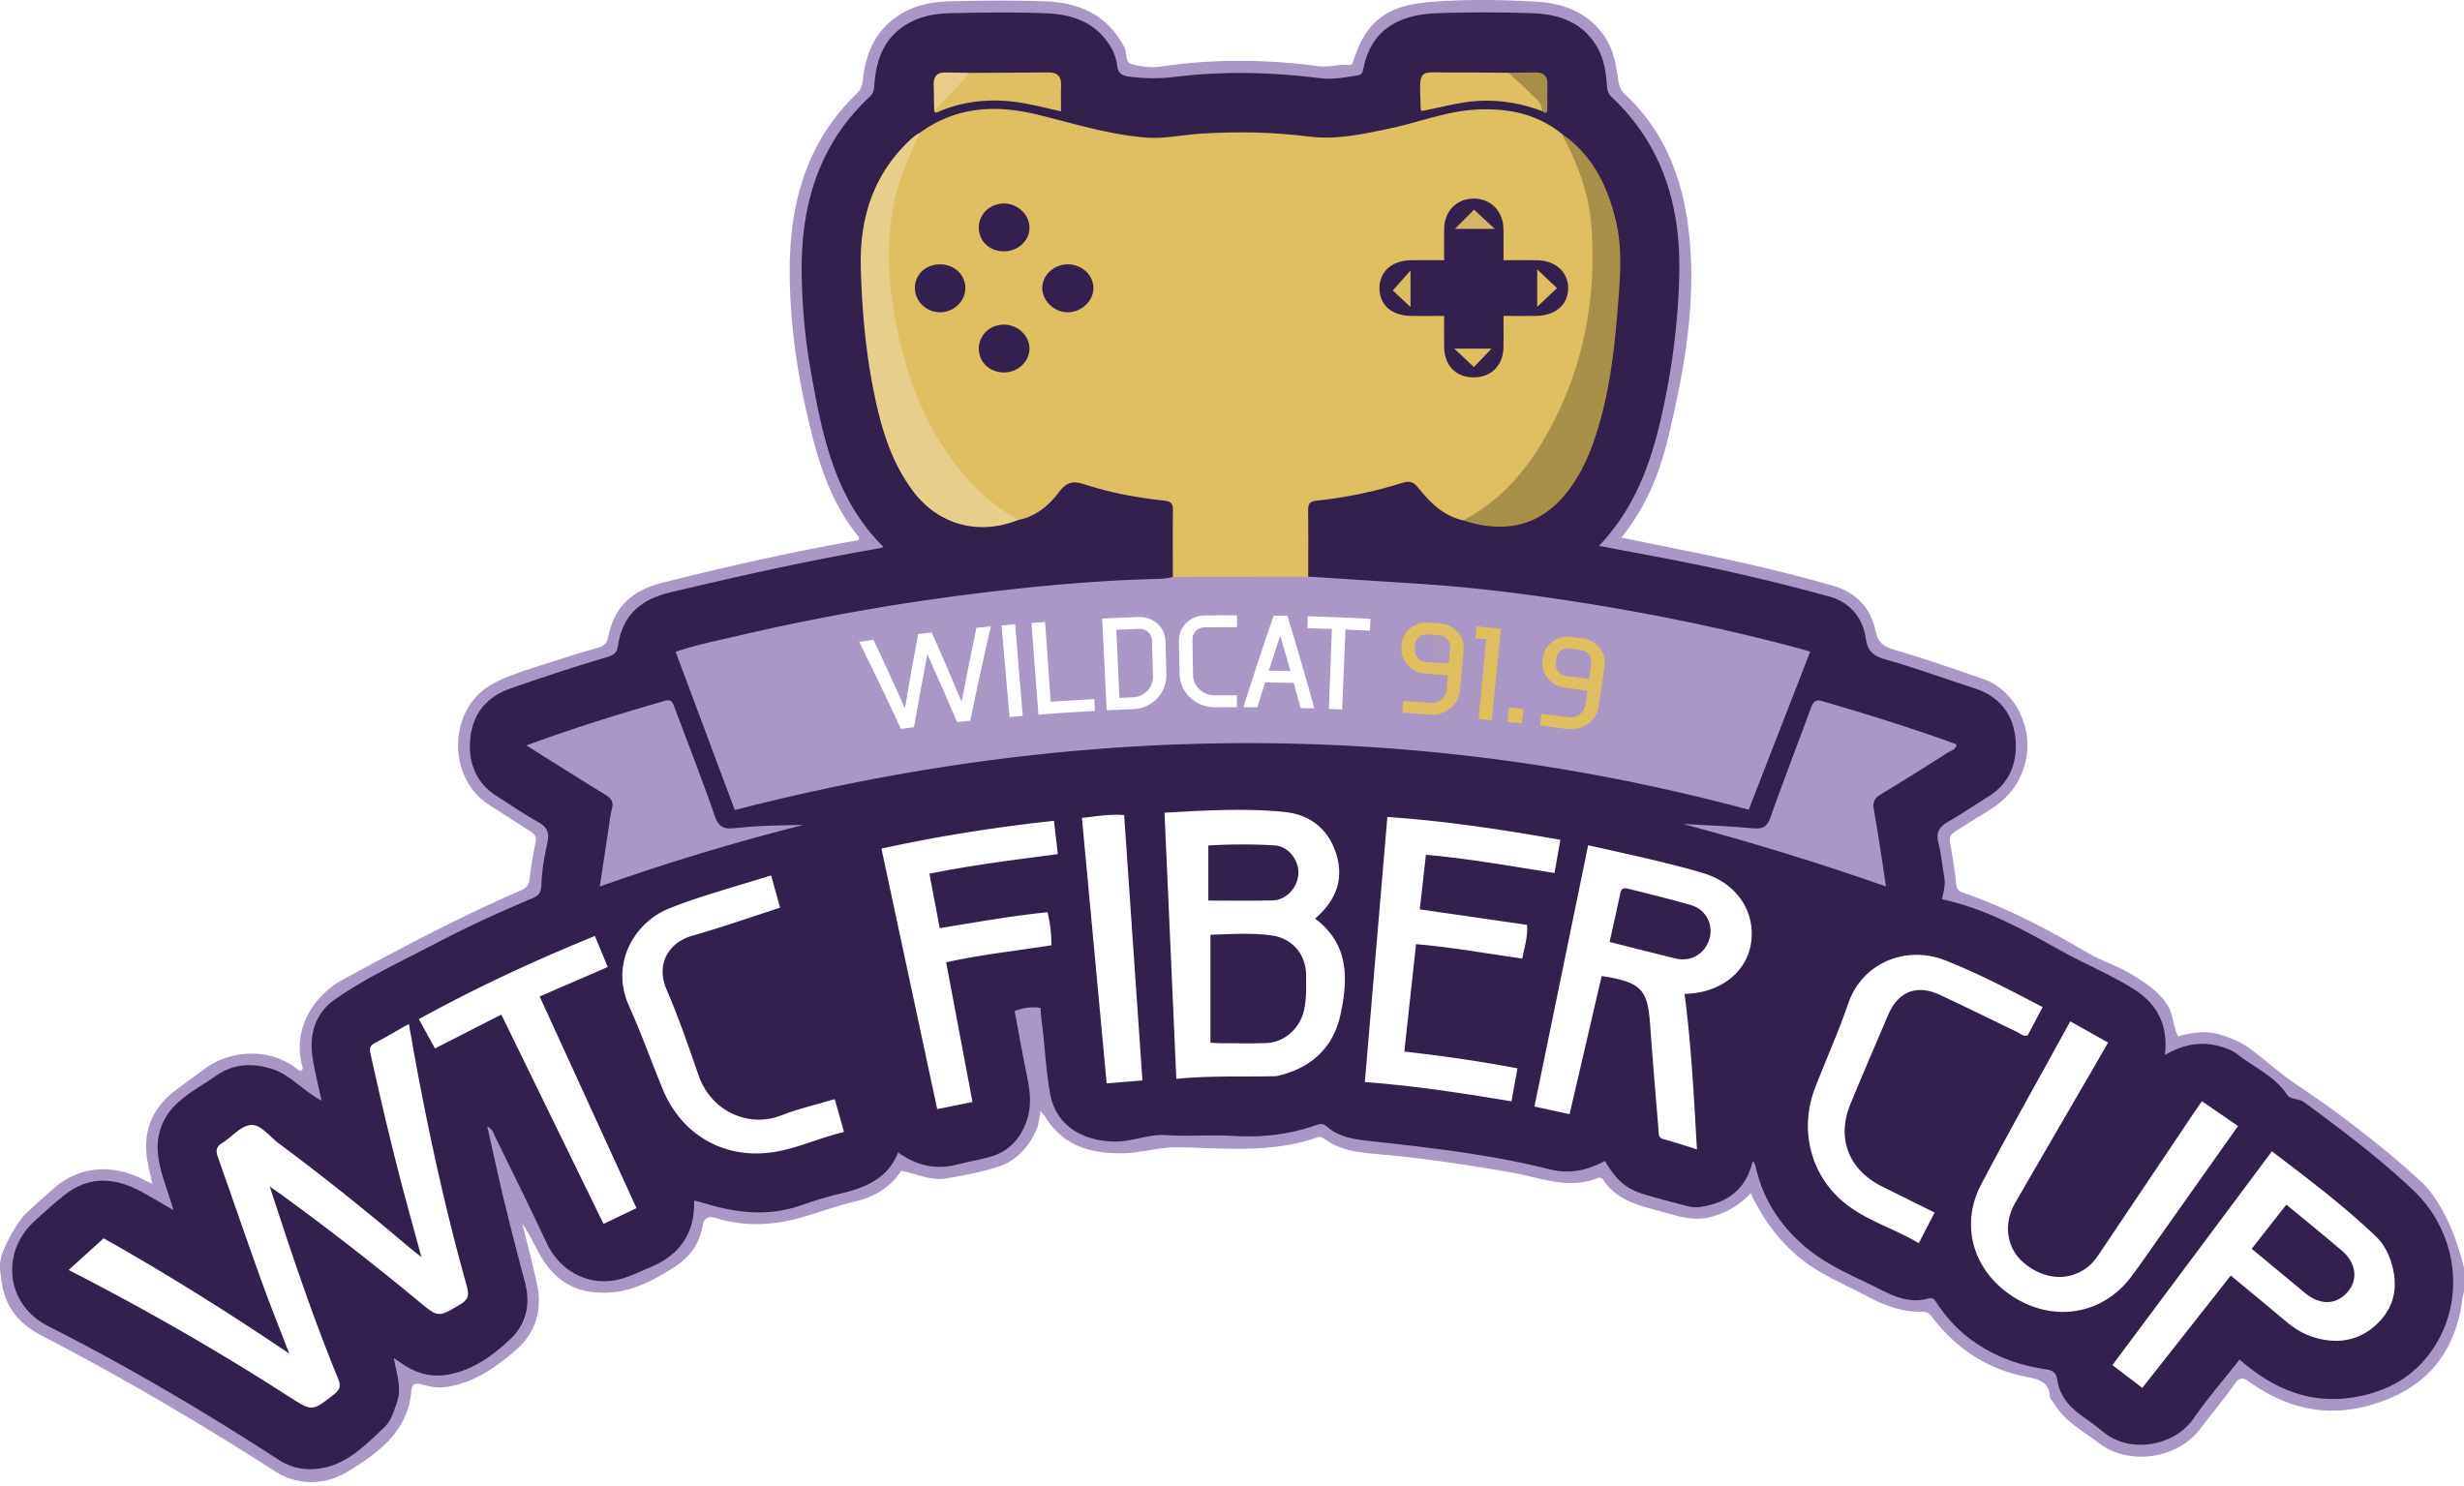 Wildcat Fiber Cup